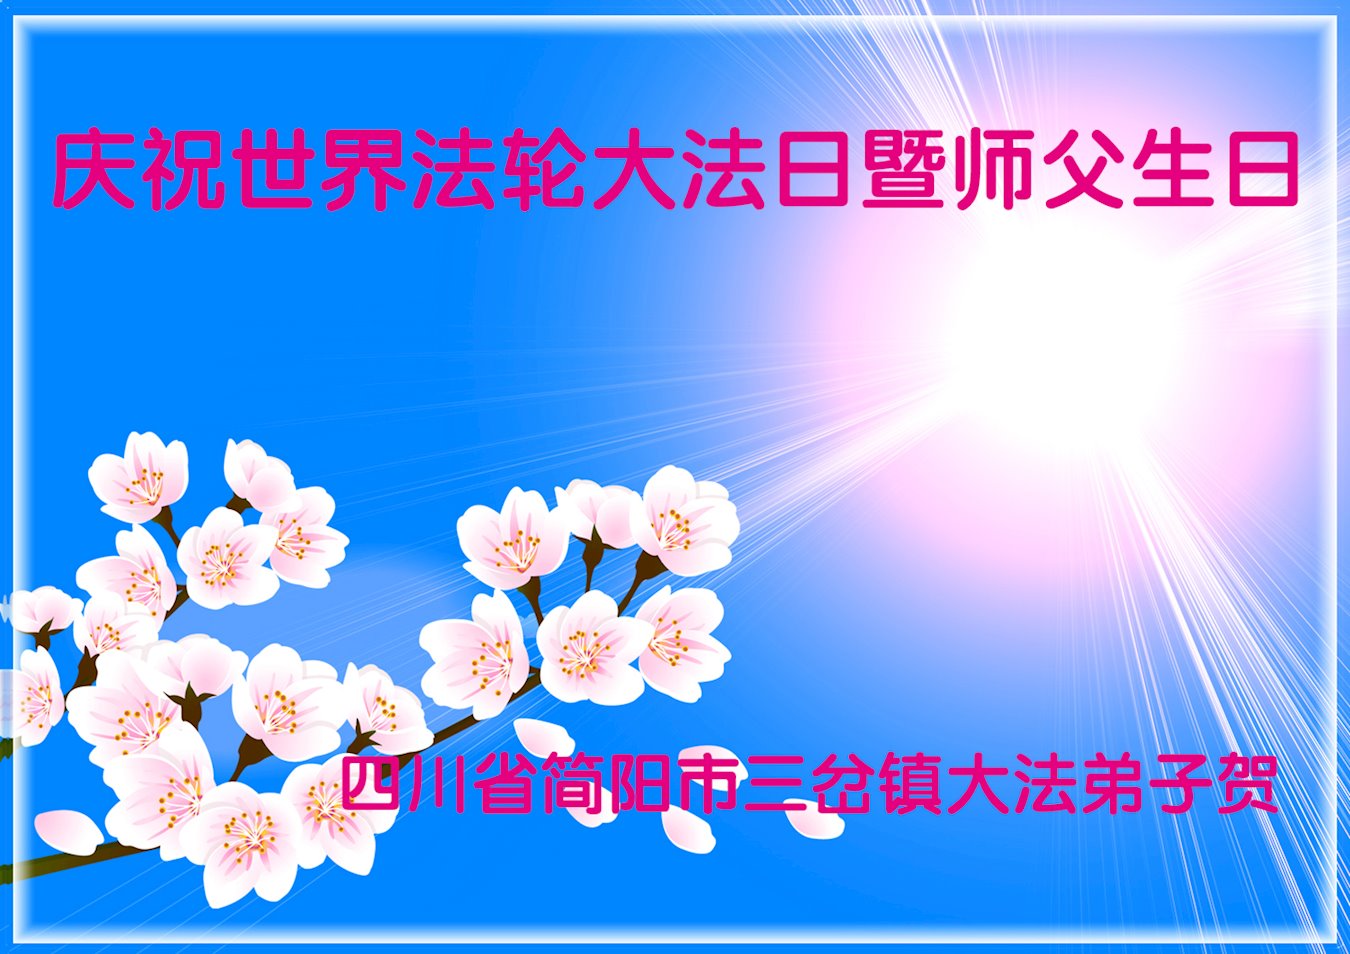 Image for article Les pratiquants de Falun Dafa répandent la vérité à grande échelle, suivent le Maître et cultivent avec diligence